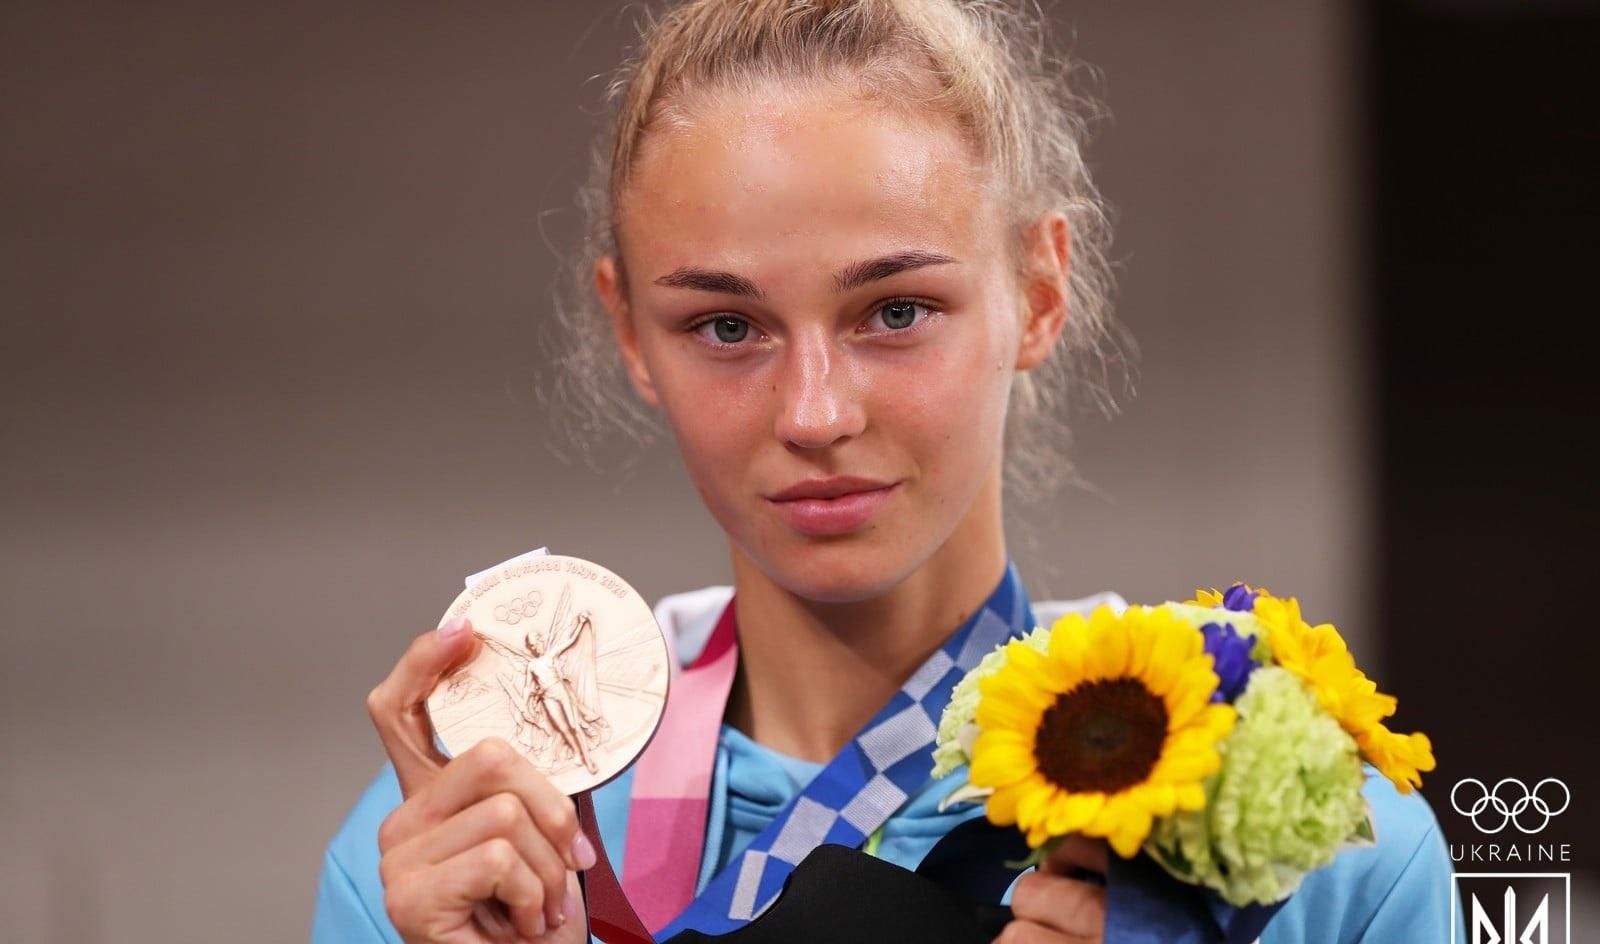 Дарья Белодед возвращается с Олимпиады в Токио: онлайн-трансляция